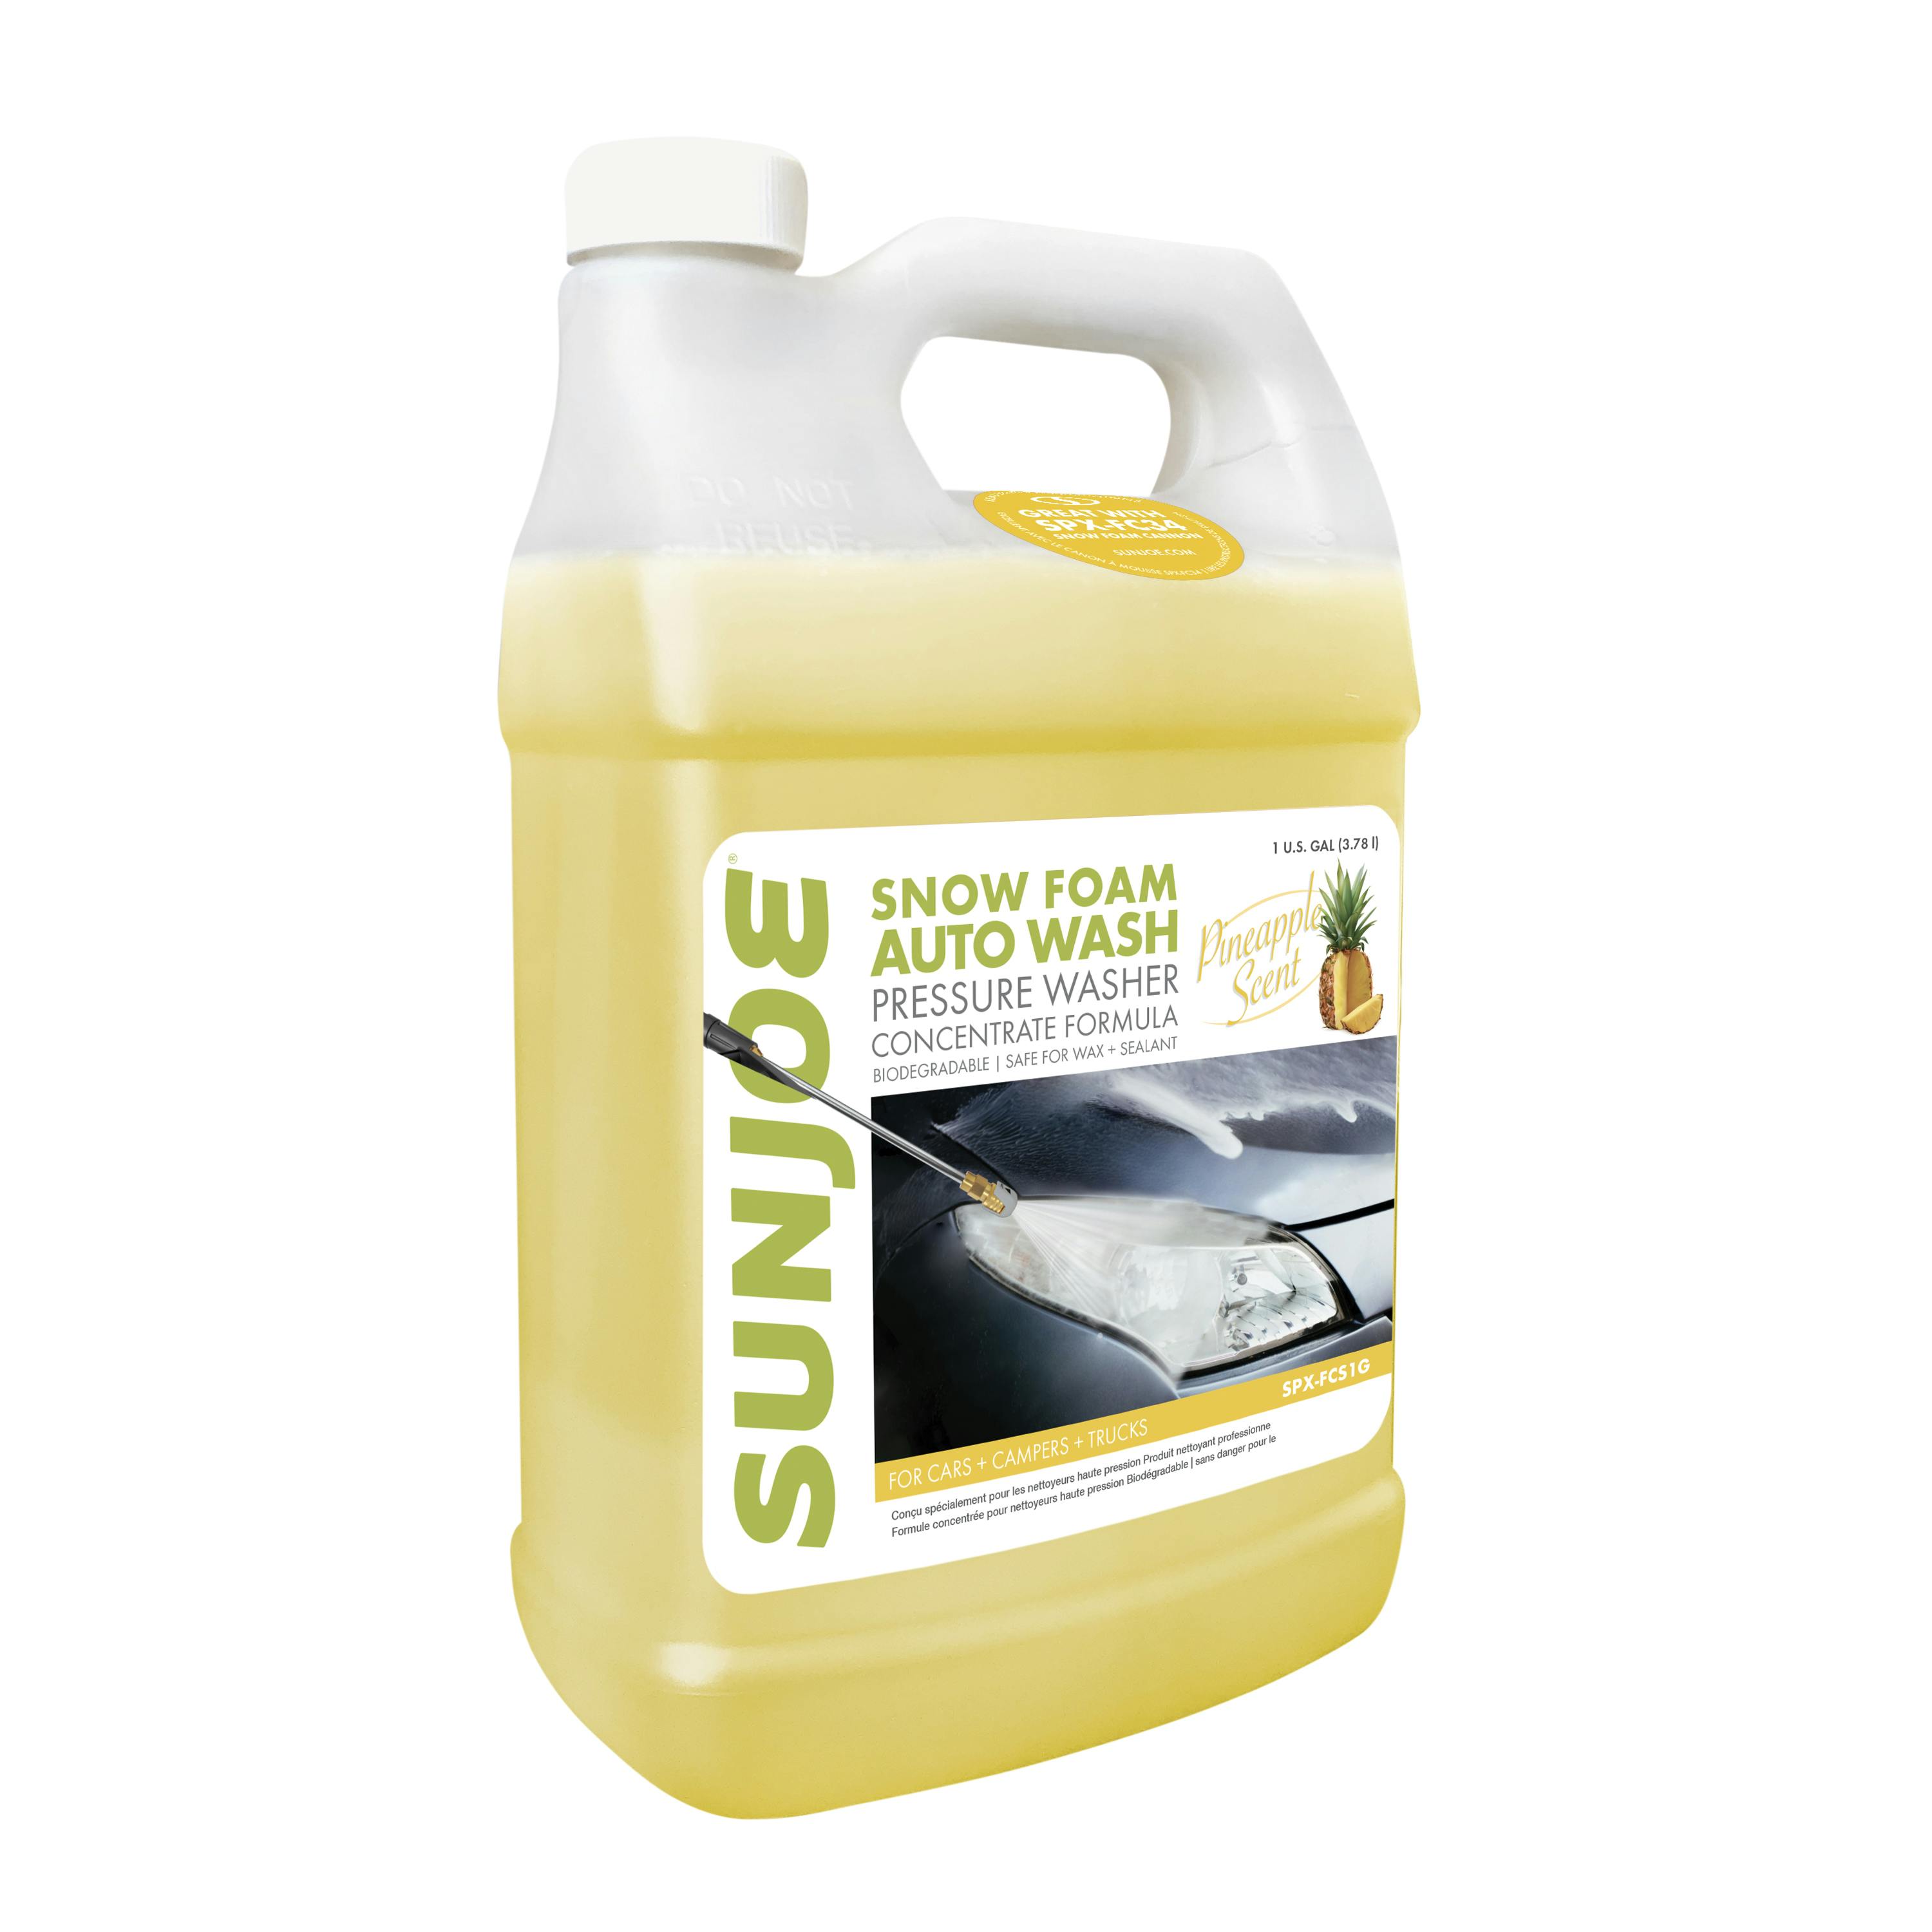 Car Wash Foam Spray Bottle Car Wash Foam Spray Bottle Adjustable  Automobiles Clean Wash Tool For Window Cars SUVs Trucks